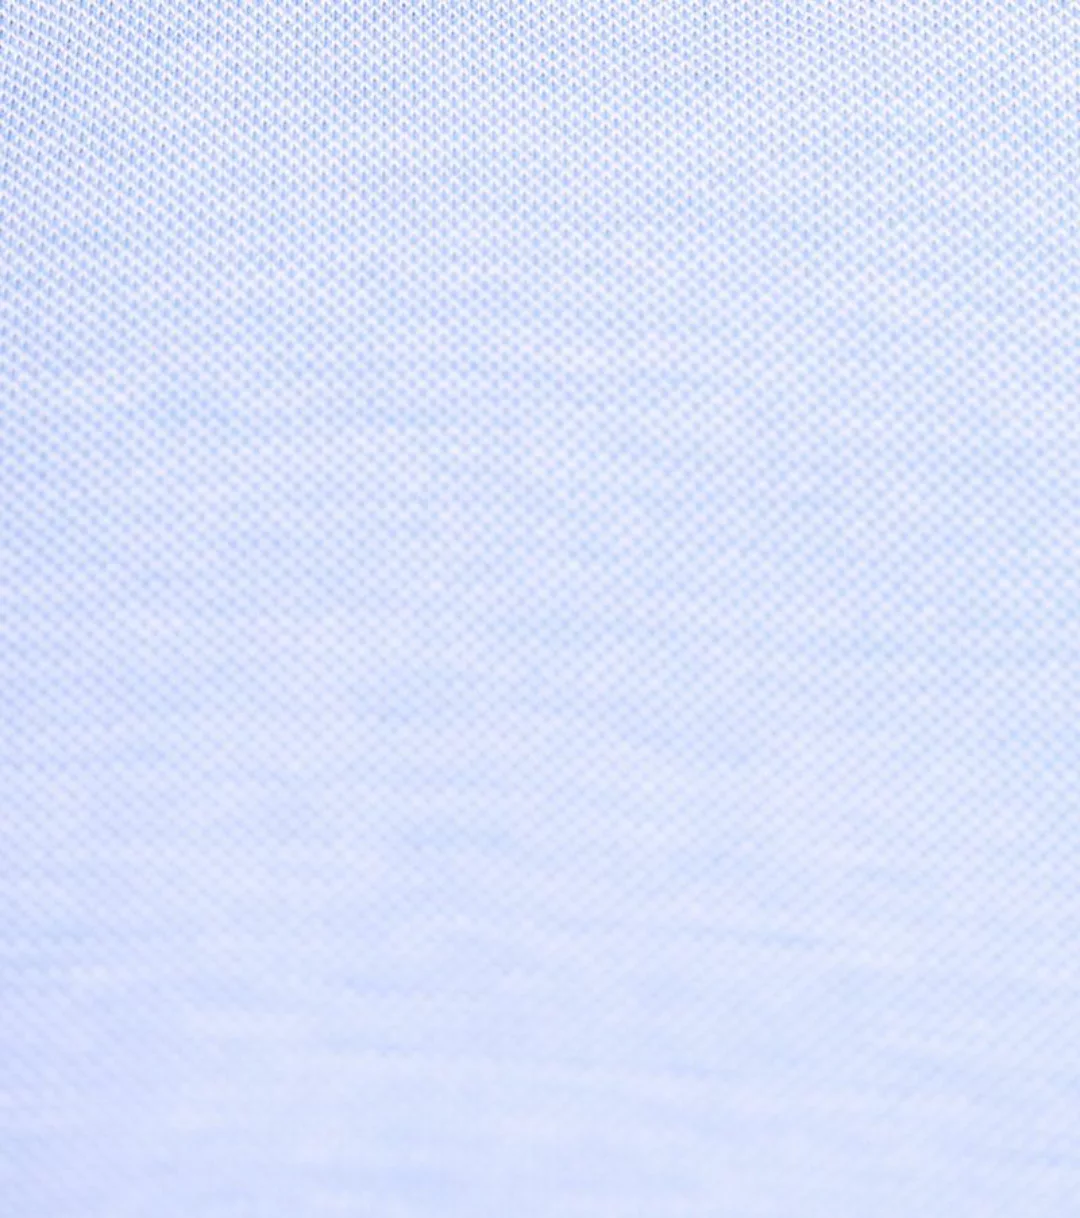 Suitable Hemd Knitted Piqué Hellblau - Größe 40 günstig online kaufen